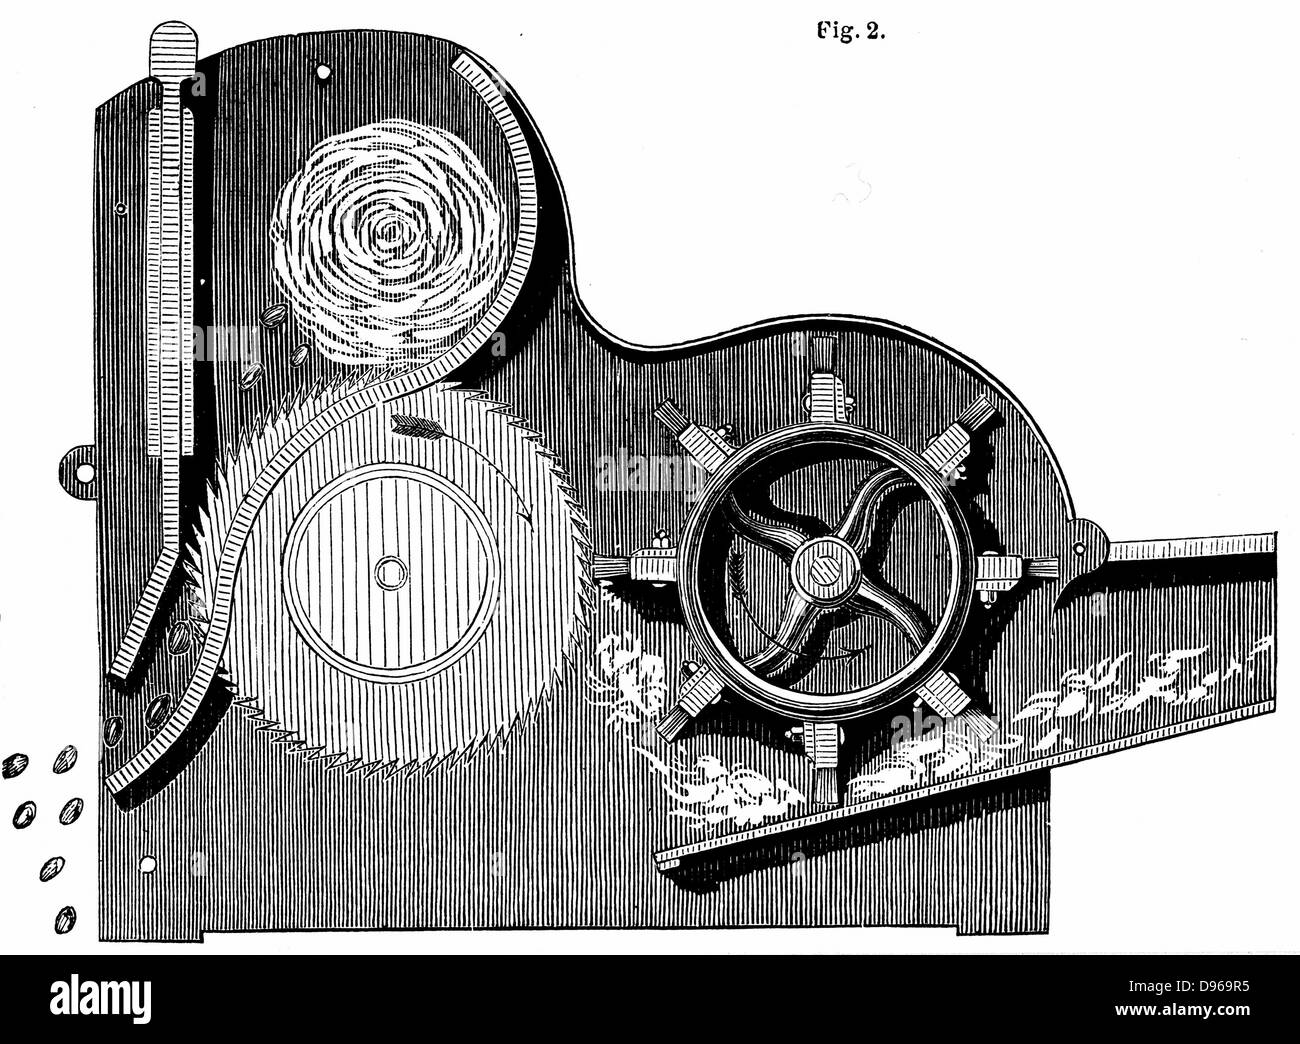 Querschnitt von Elihu Whitney's (1765-1825) sah - Gin für die Reinigung von Baumwolle. Samen kann man auf der linken Seite ausgeworfen werden, während Baumwolle Weitergabe von Rechten sind. Holzstich 1865. Stockfoto